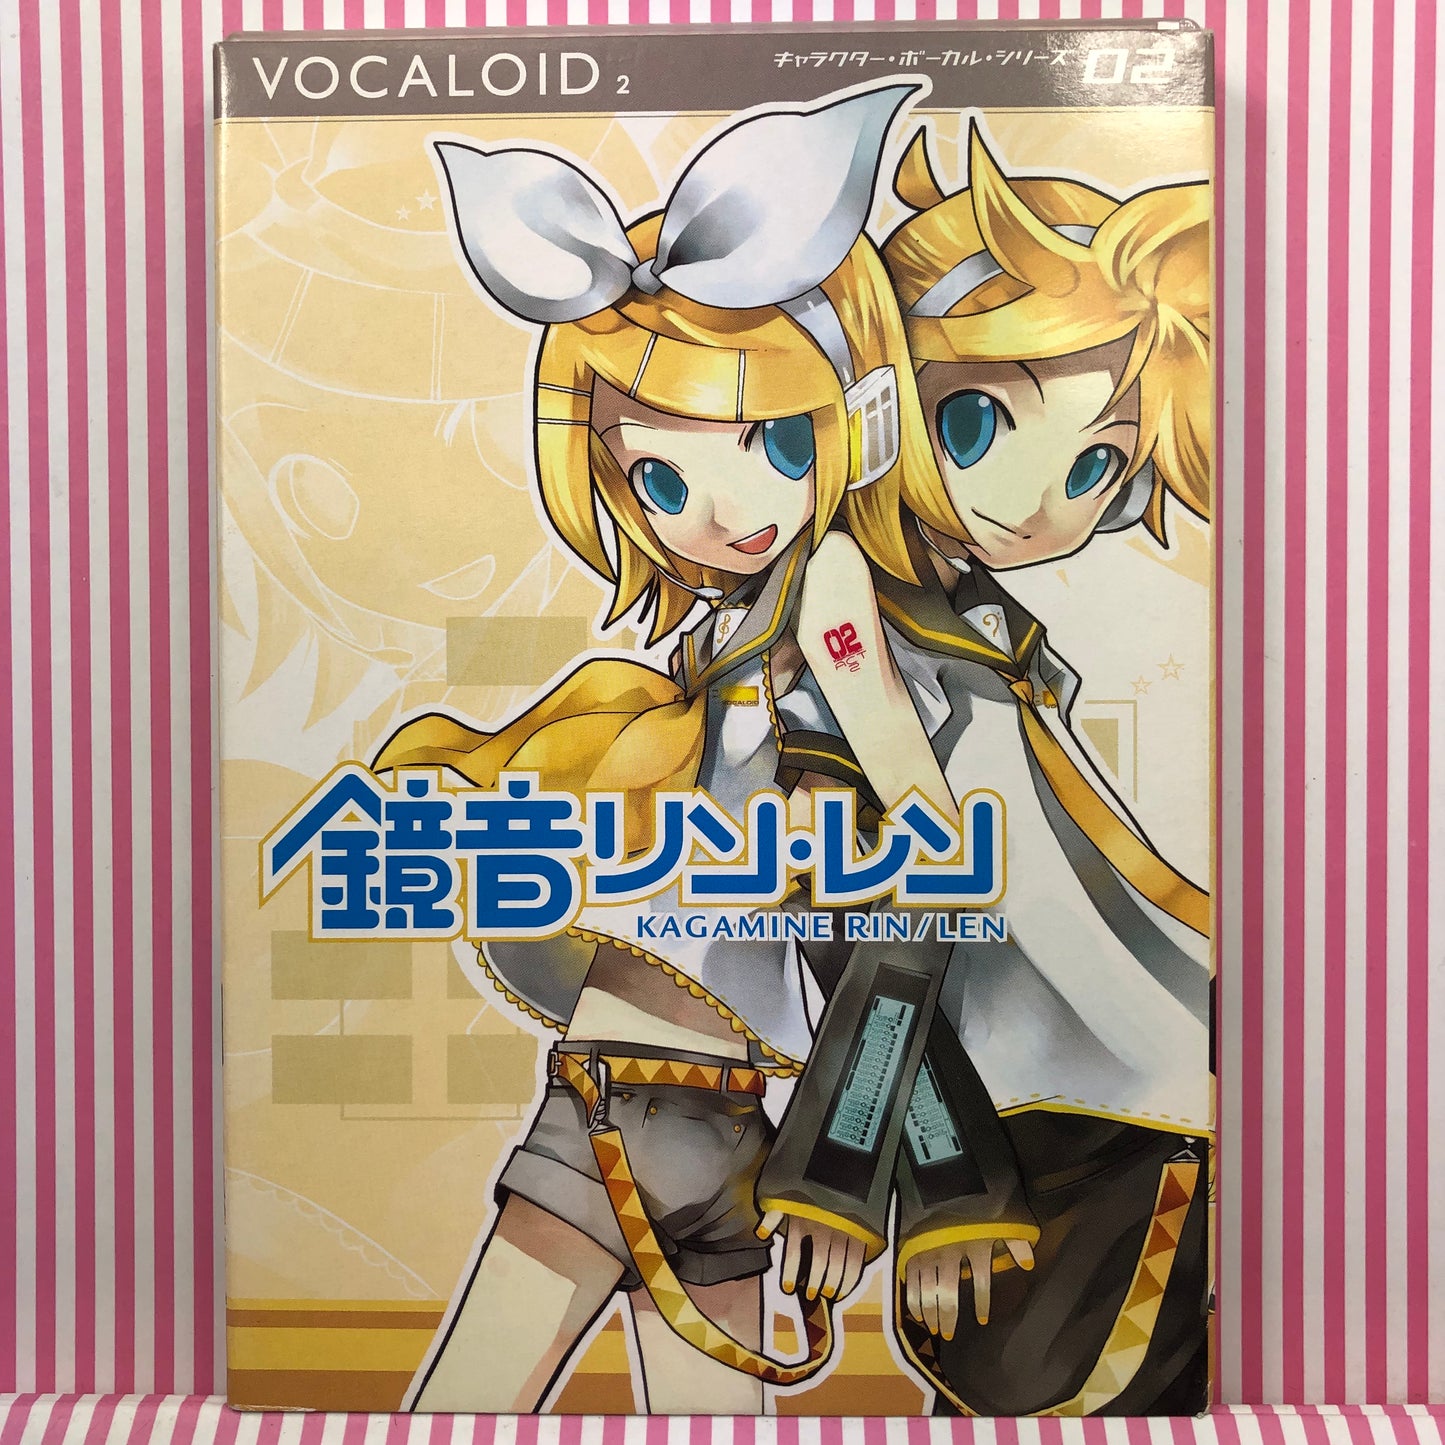 Vocaloid Kagamine Len Kagamine Rin Bibliothèque officielle de la banque vocale Vocaloid 2